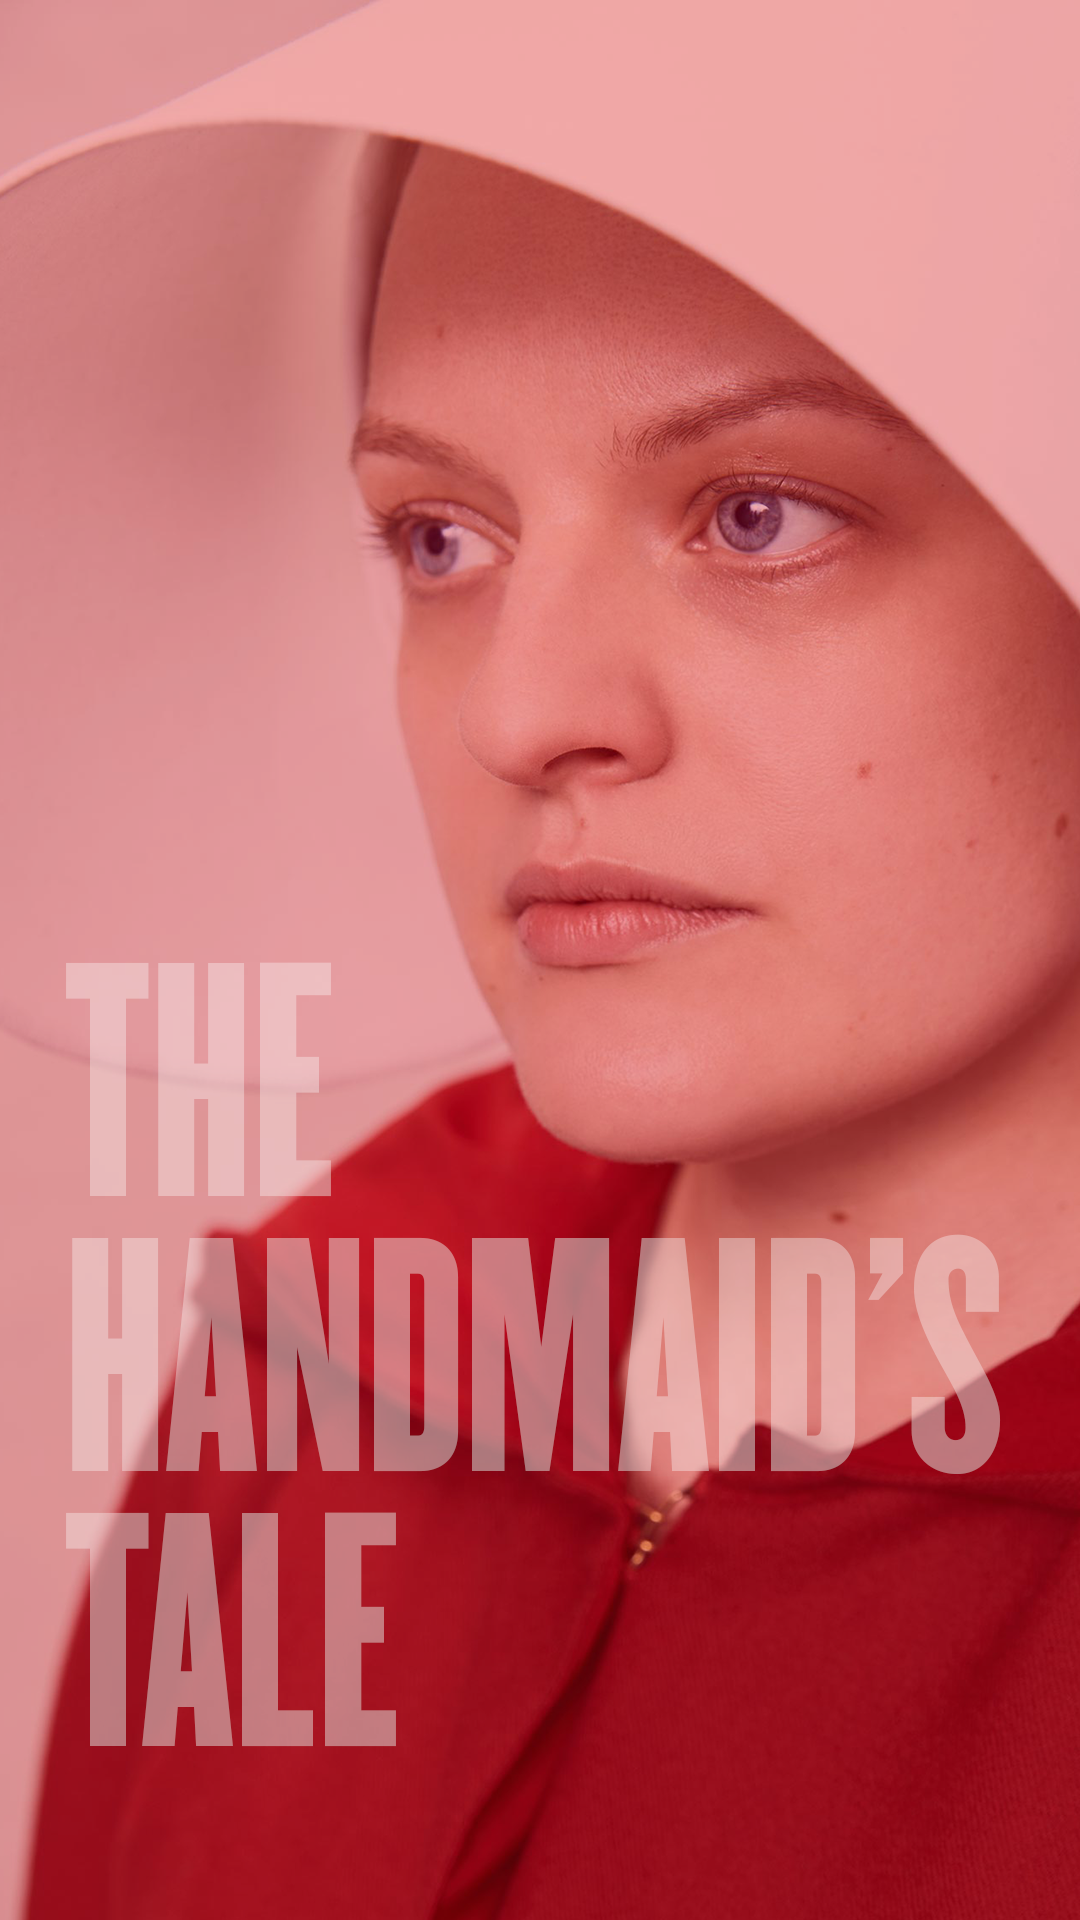 Wallpaper The Handmaid's Tale segunda temporada vertical. Temporadas, Melhores imagens, Segunda temporada